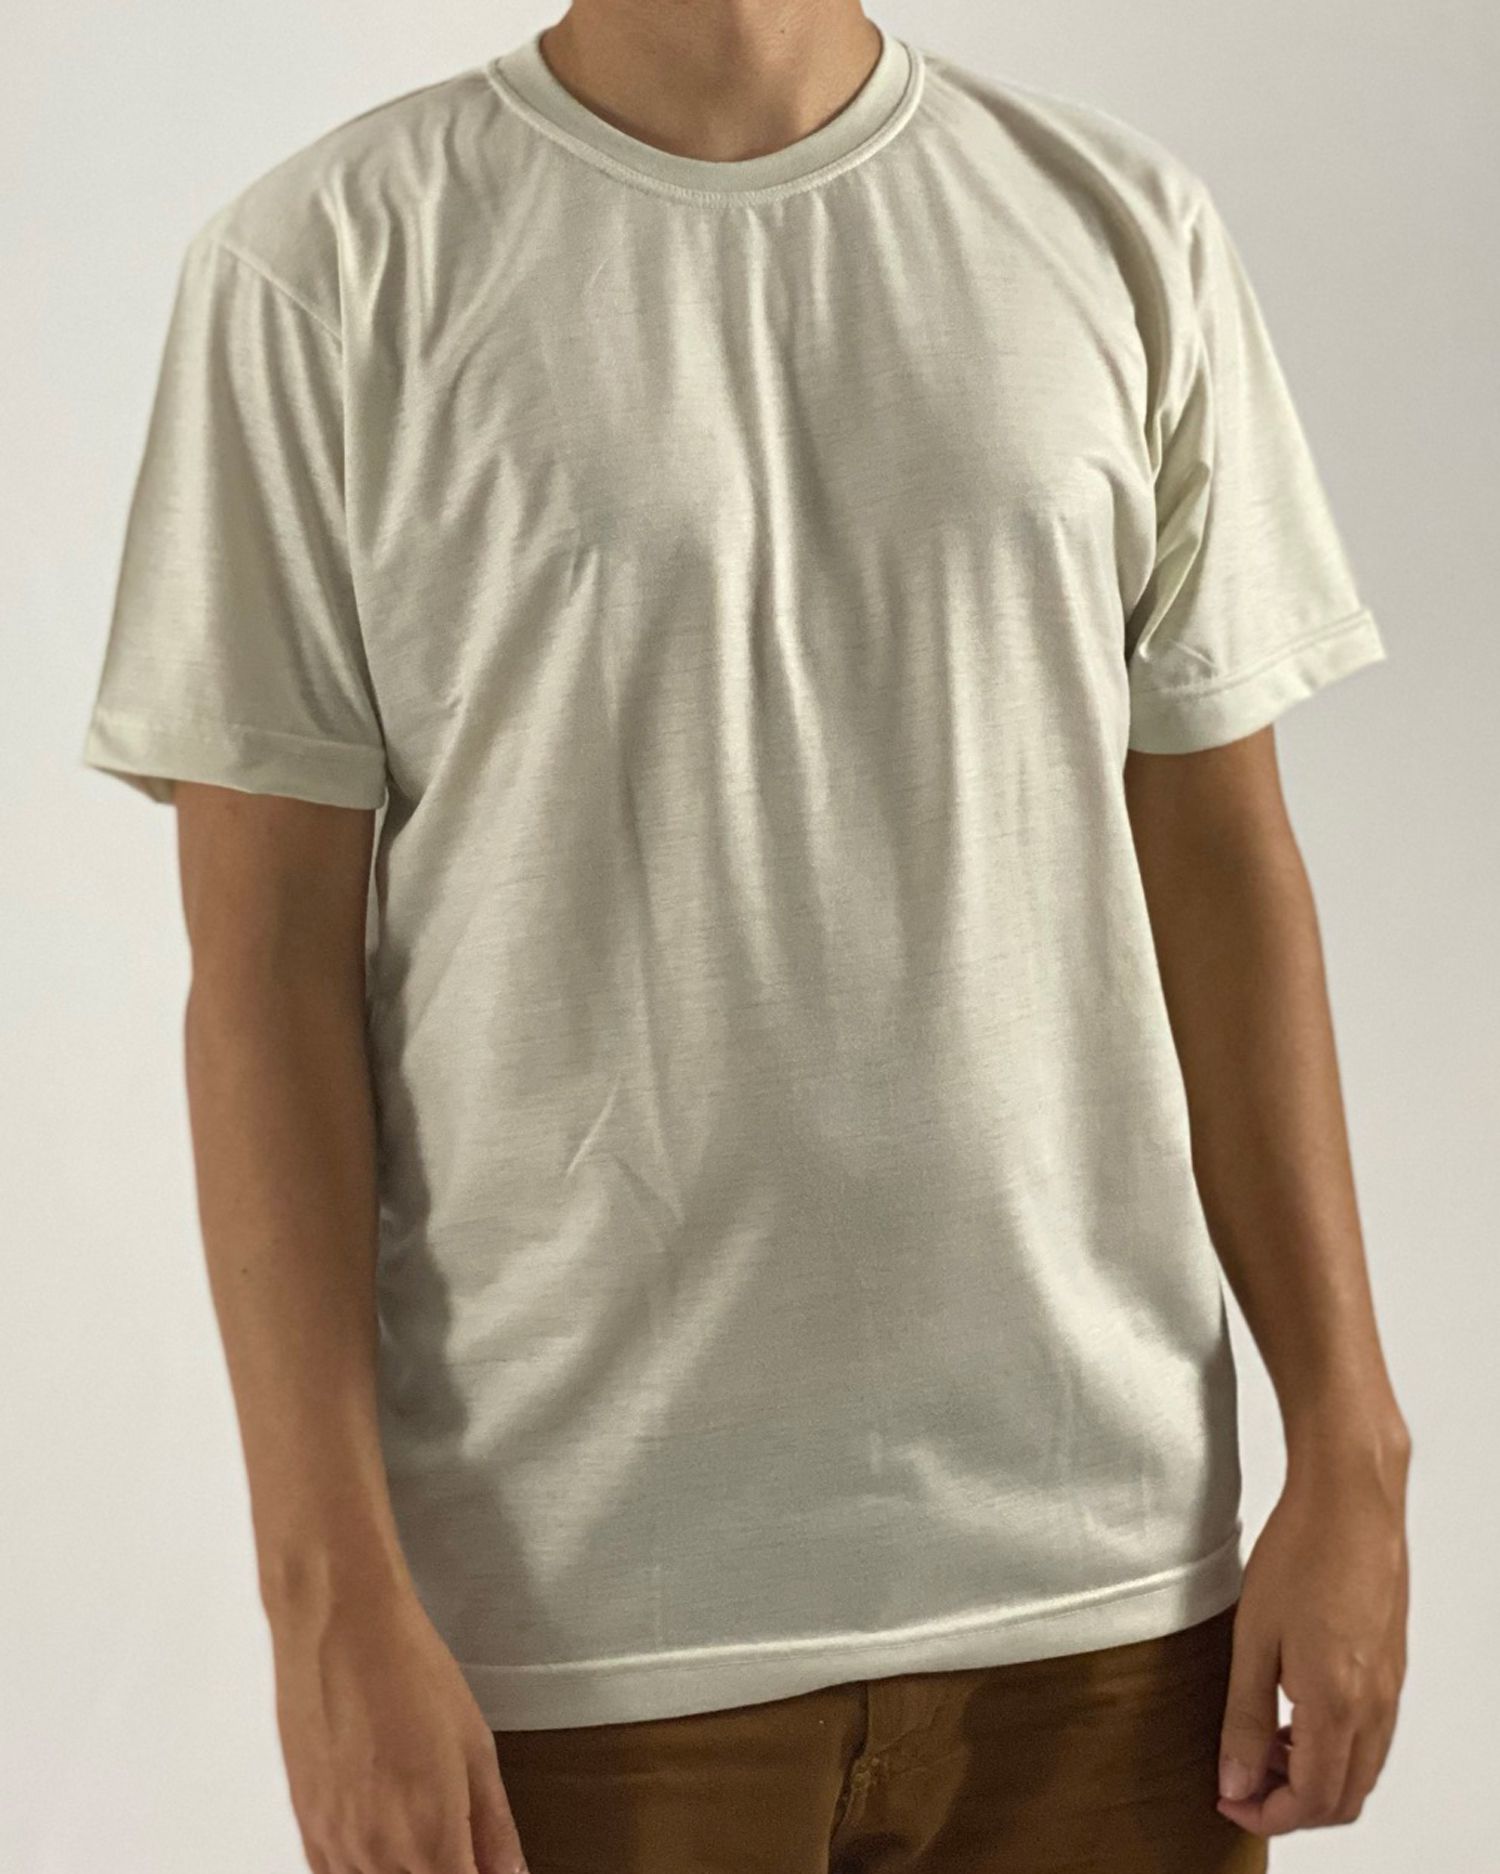 Camiseta Bege, 100% Poliéster - Fábrica de Camisetas Em Curitiba - (41)  3286-1158 - Empório da Família